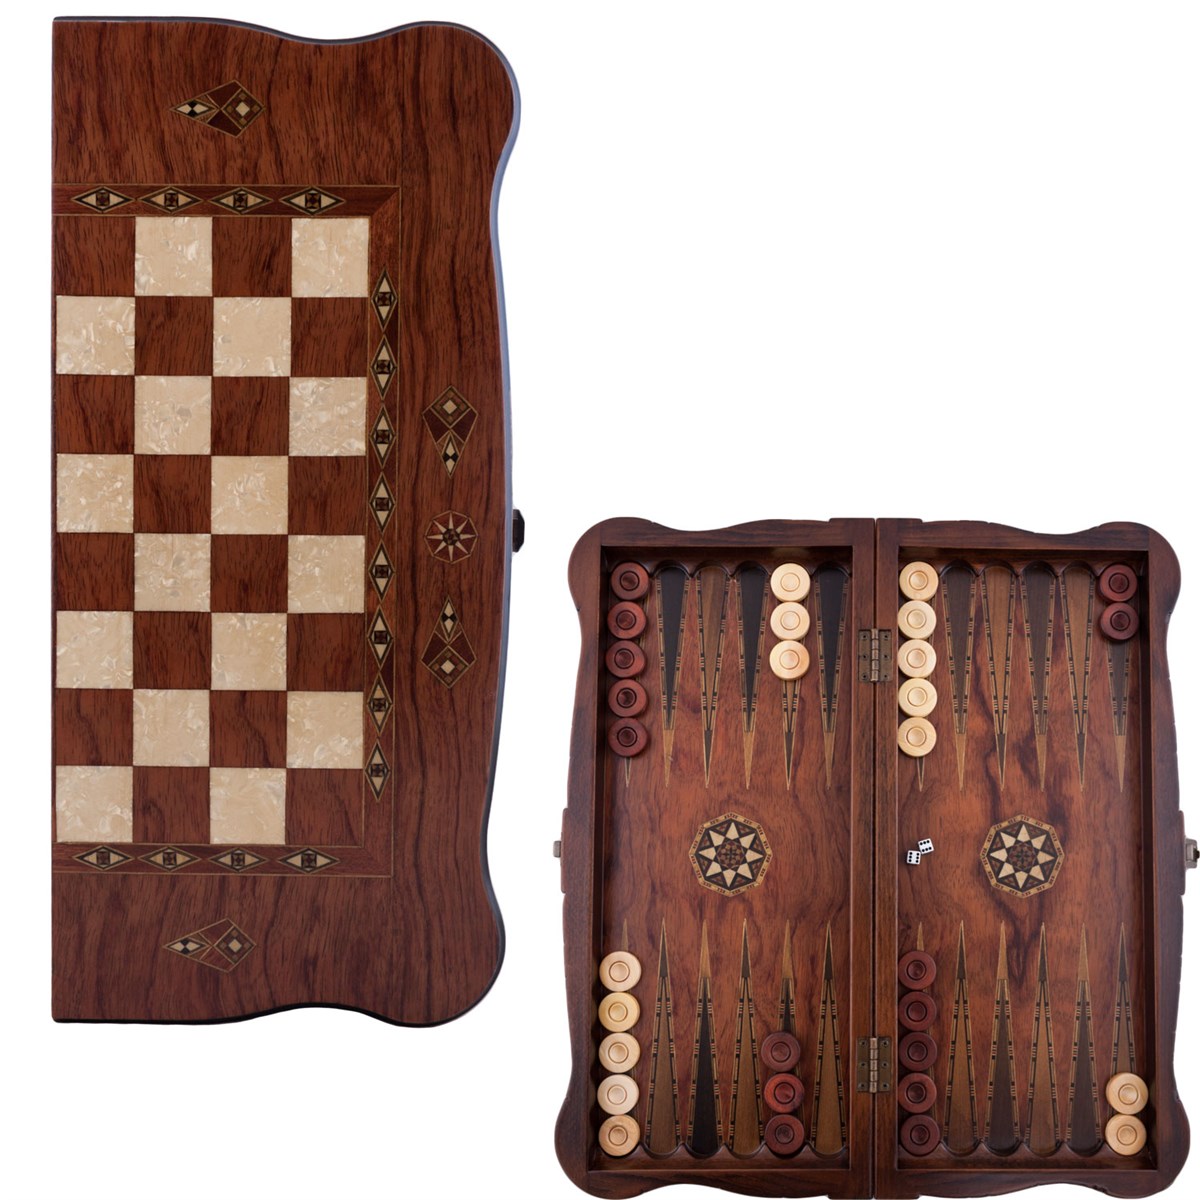 Helena Wood Art Handgemaakte Houten Backgammon Speelset van Hoge Kwaliteit - Tavla - 100% Hout - Luxe uitgave - TricTrac - 52 x 24 cm